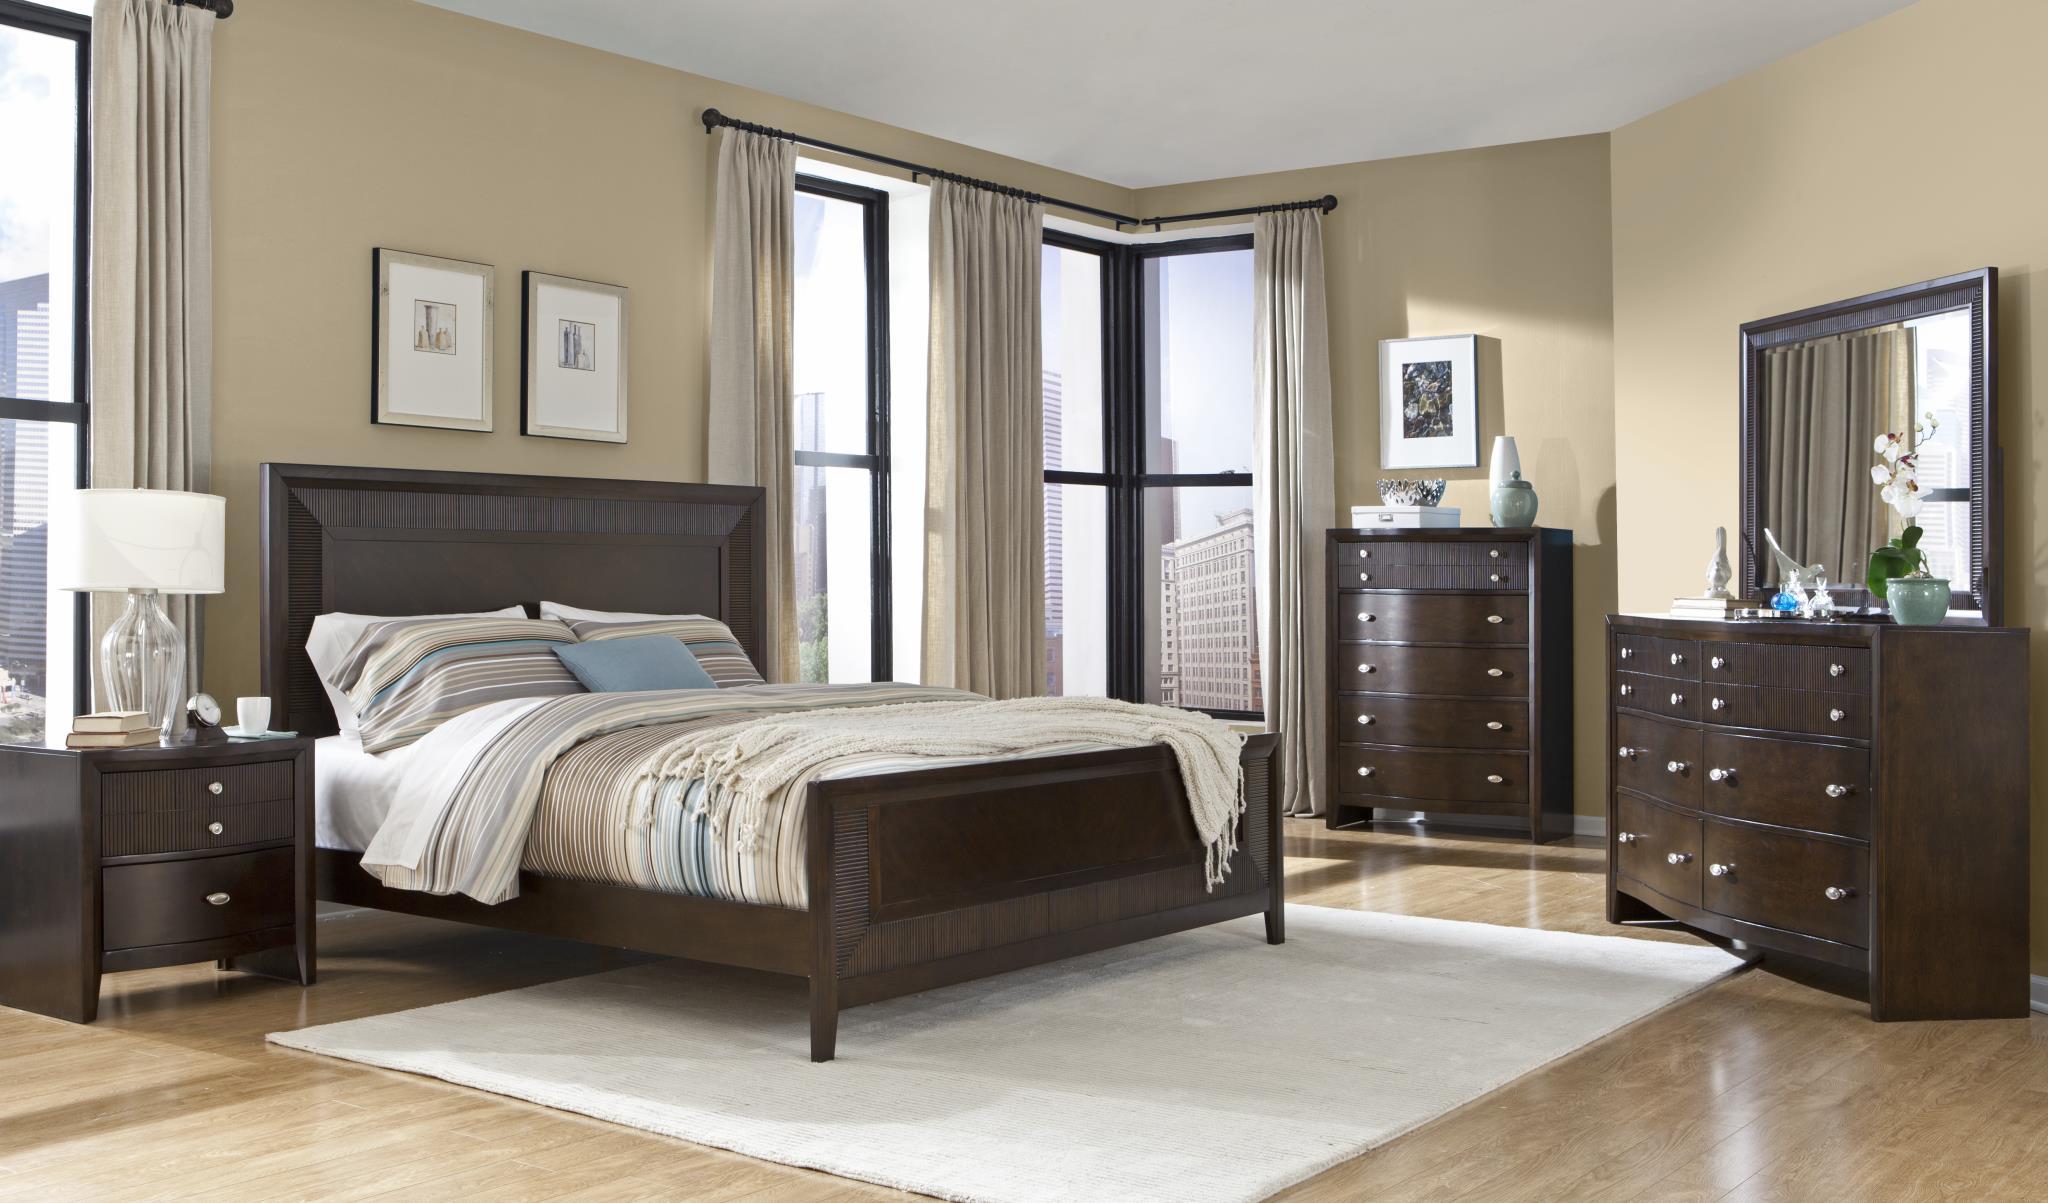 

    
MYCO Furniture EM3110Q Empire Espresso Finish Ribbed Wood Queen Panel Bedroom Set 6Pcs
